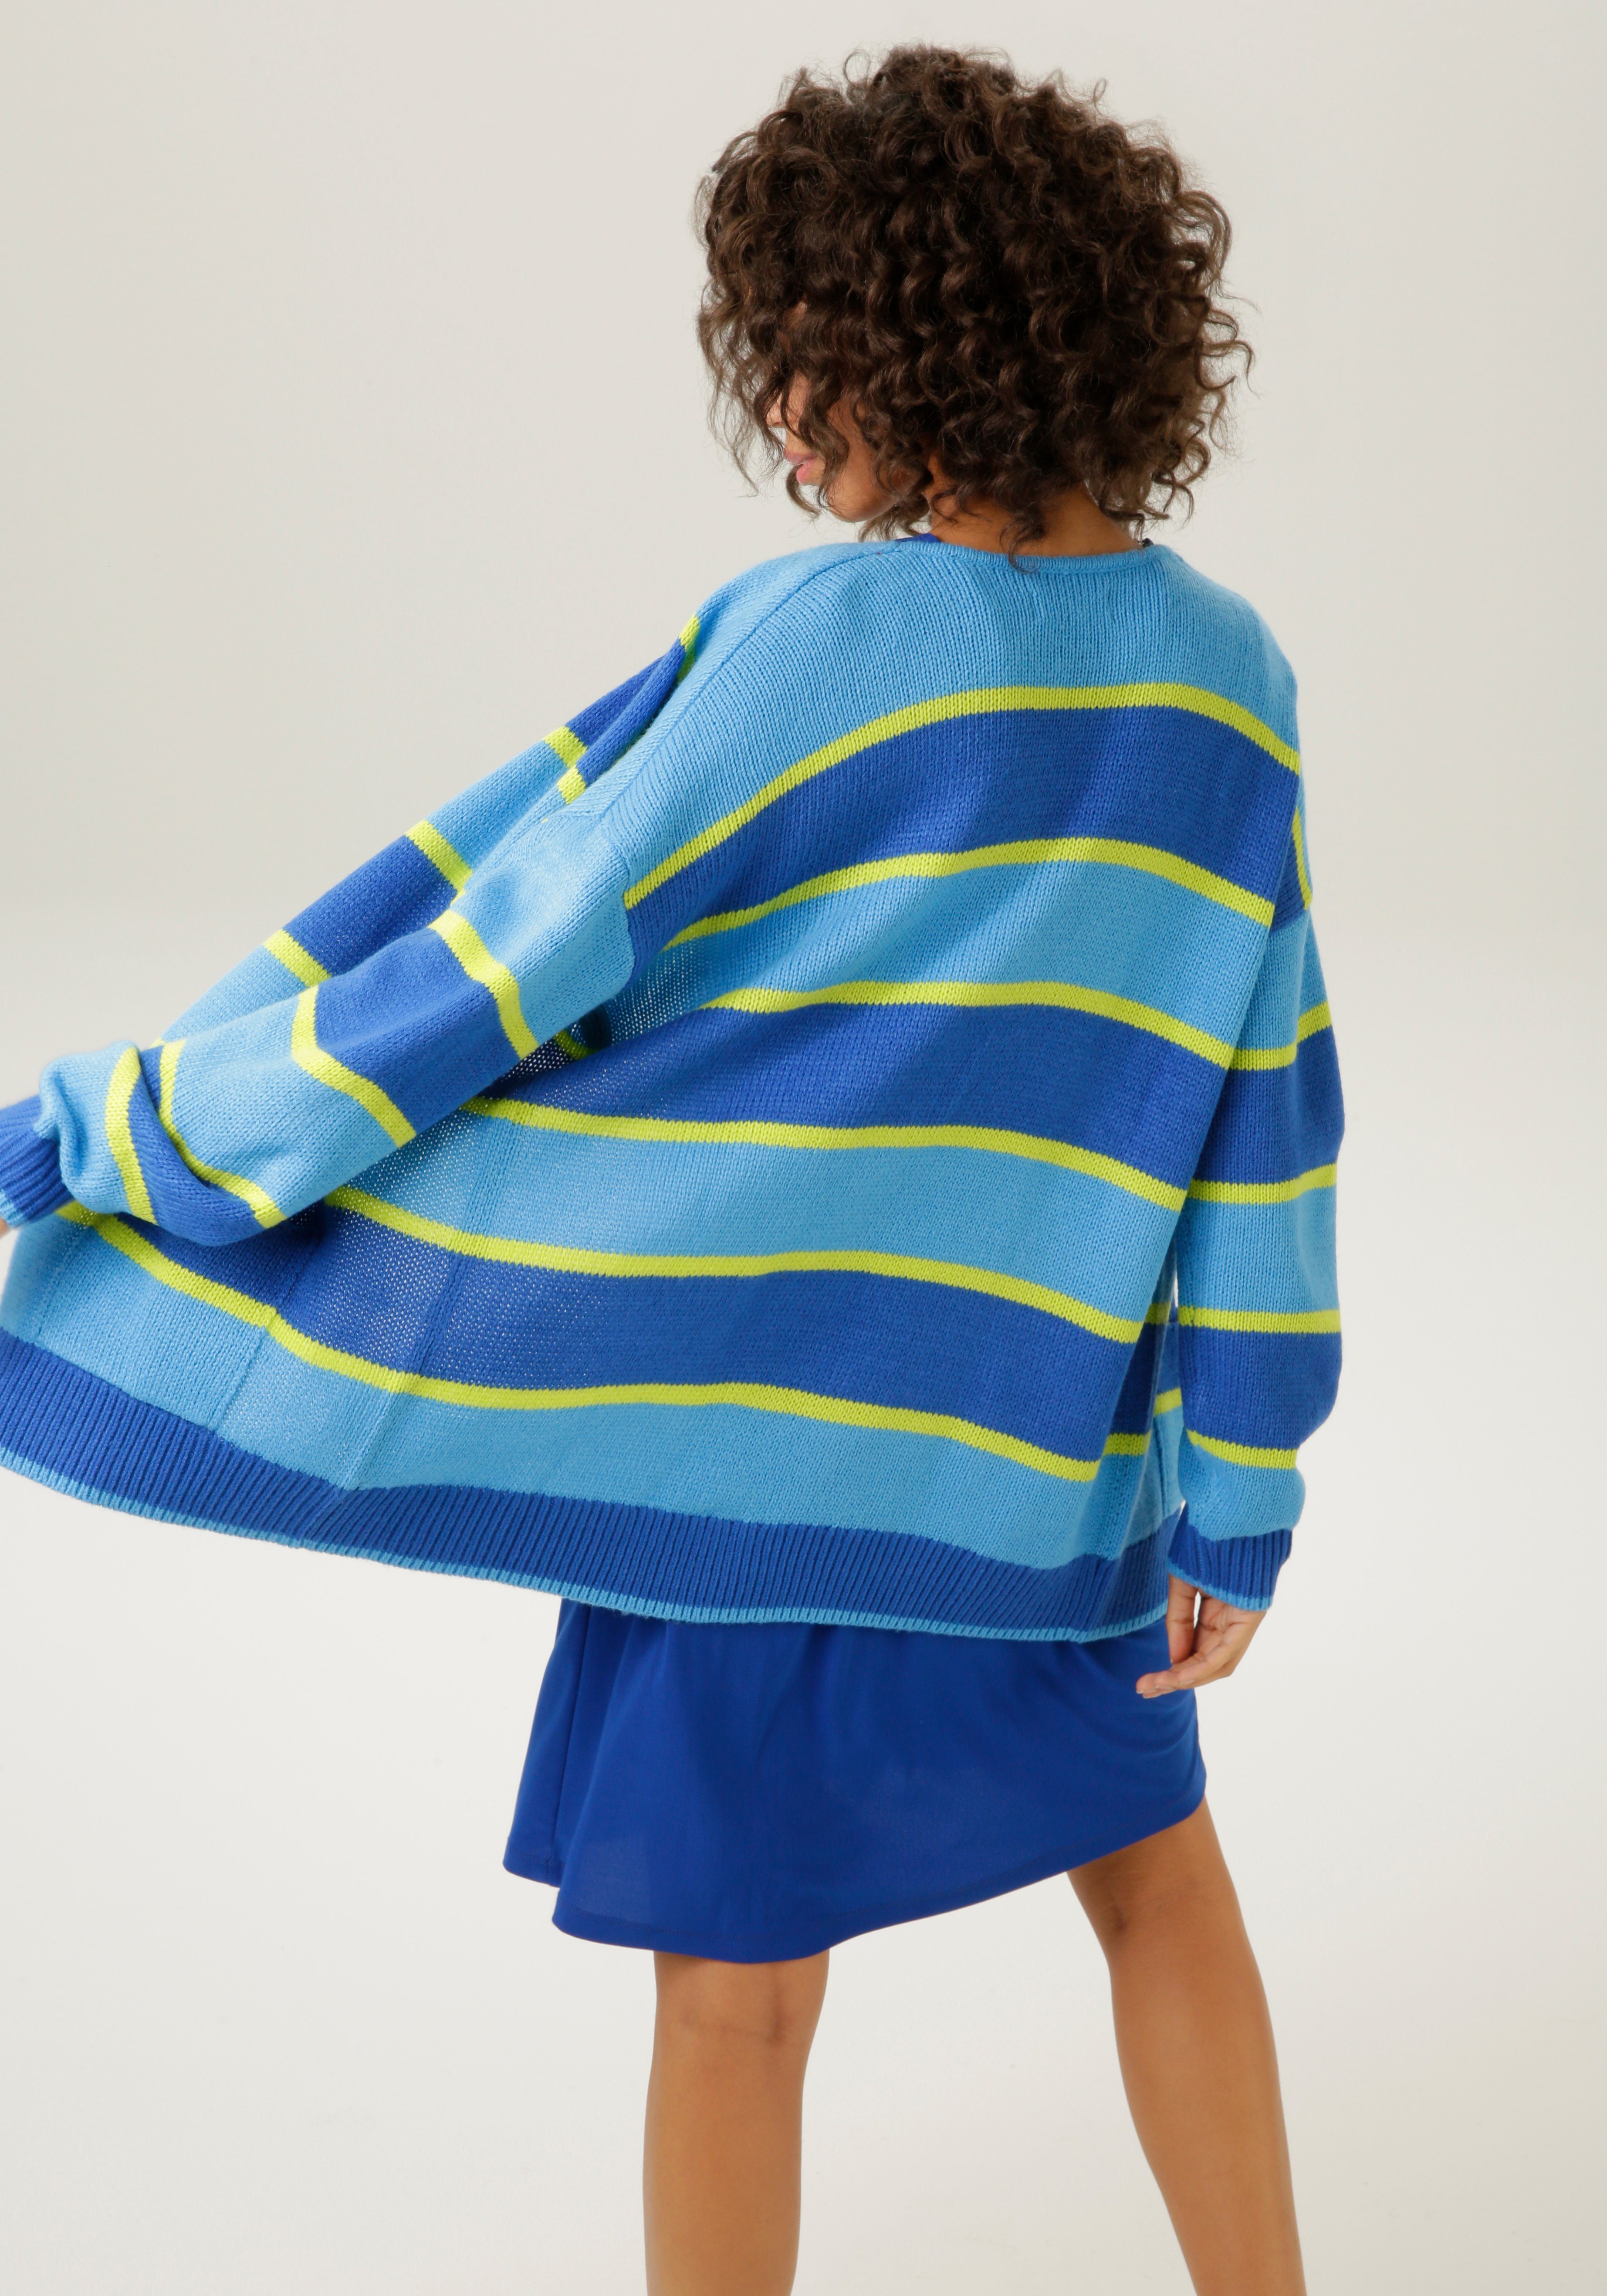 Aniston CASUAL Vest in een harmonieus gekleurd streepdesign nieuwe collectie